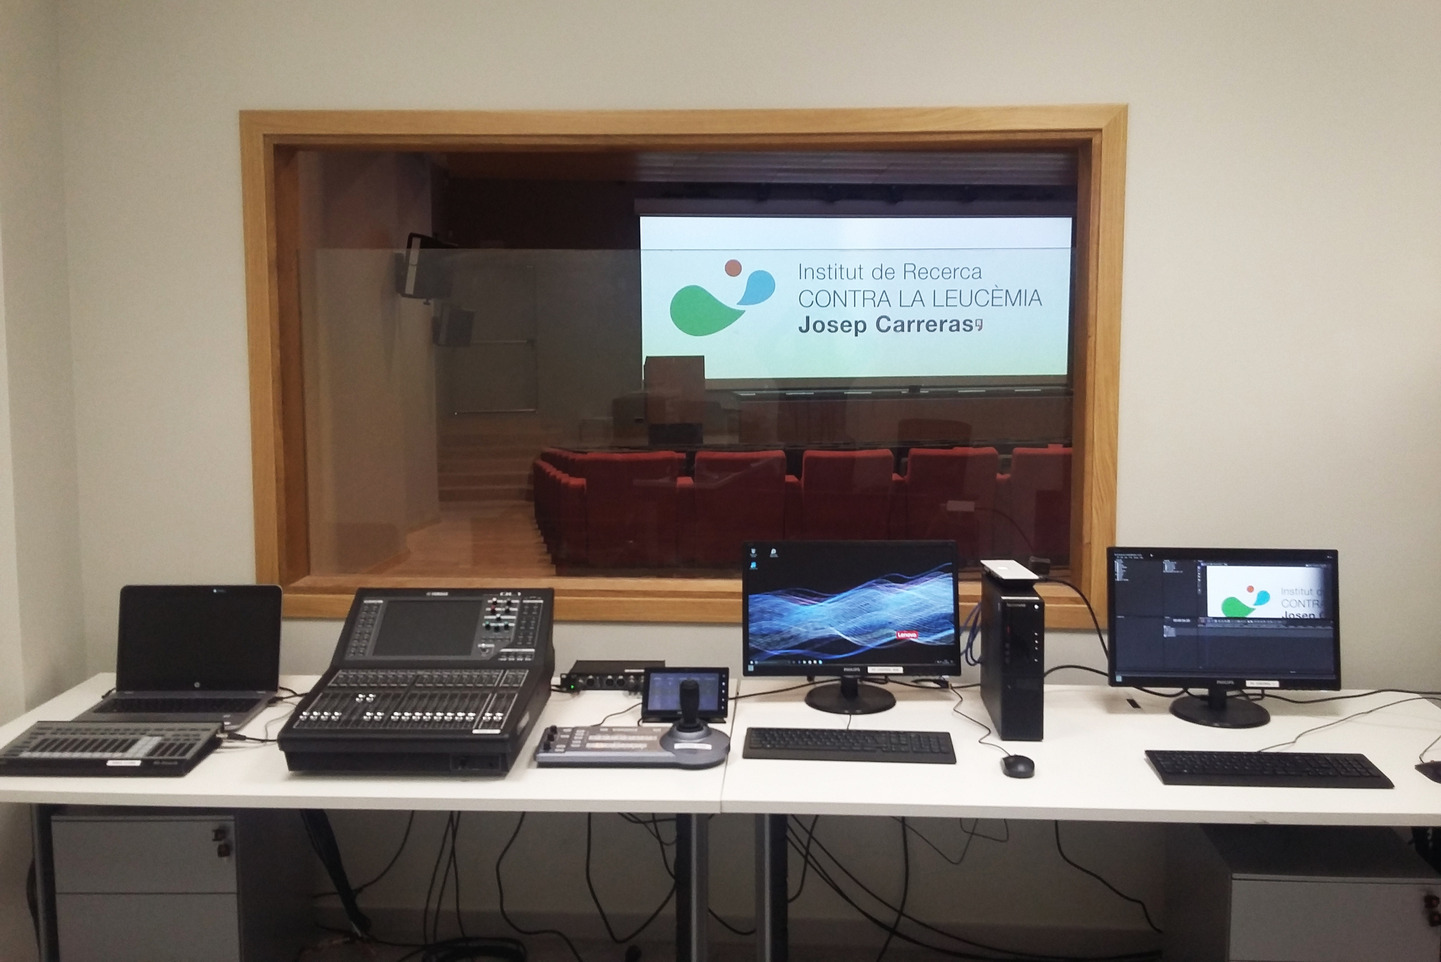 Charmex suministra lo último en tecnología audiovisual al Instituto de Investigación contra la Leucemia Josep Carreras